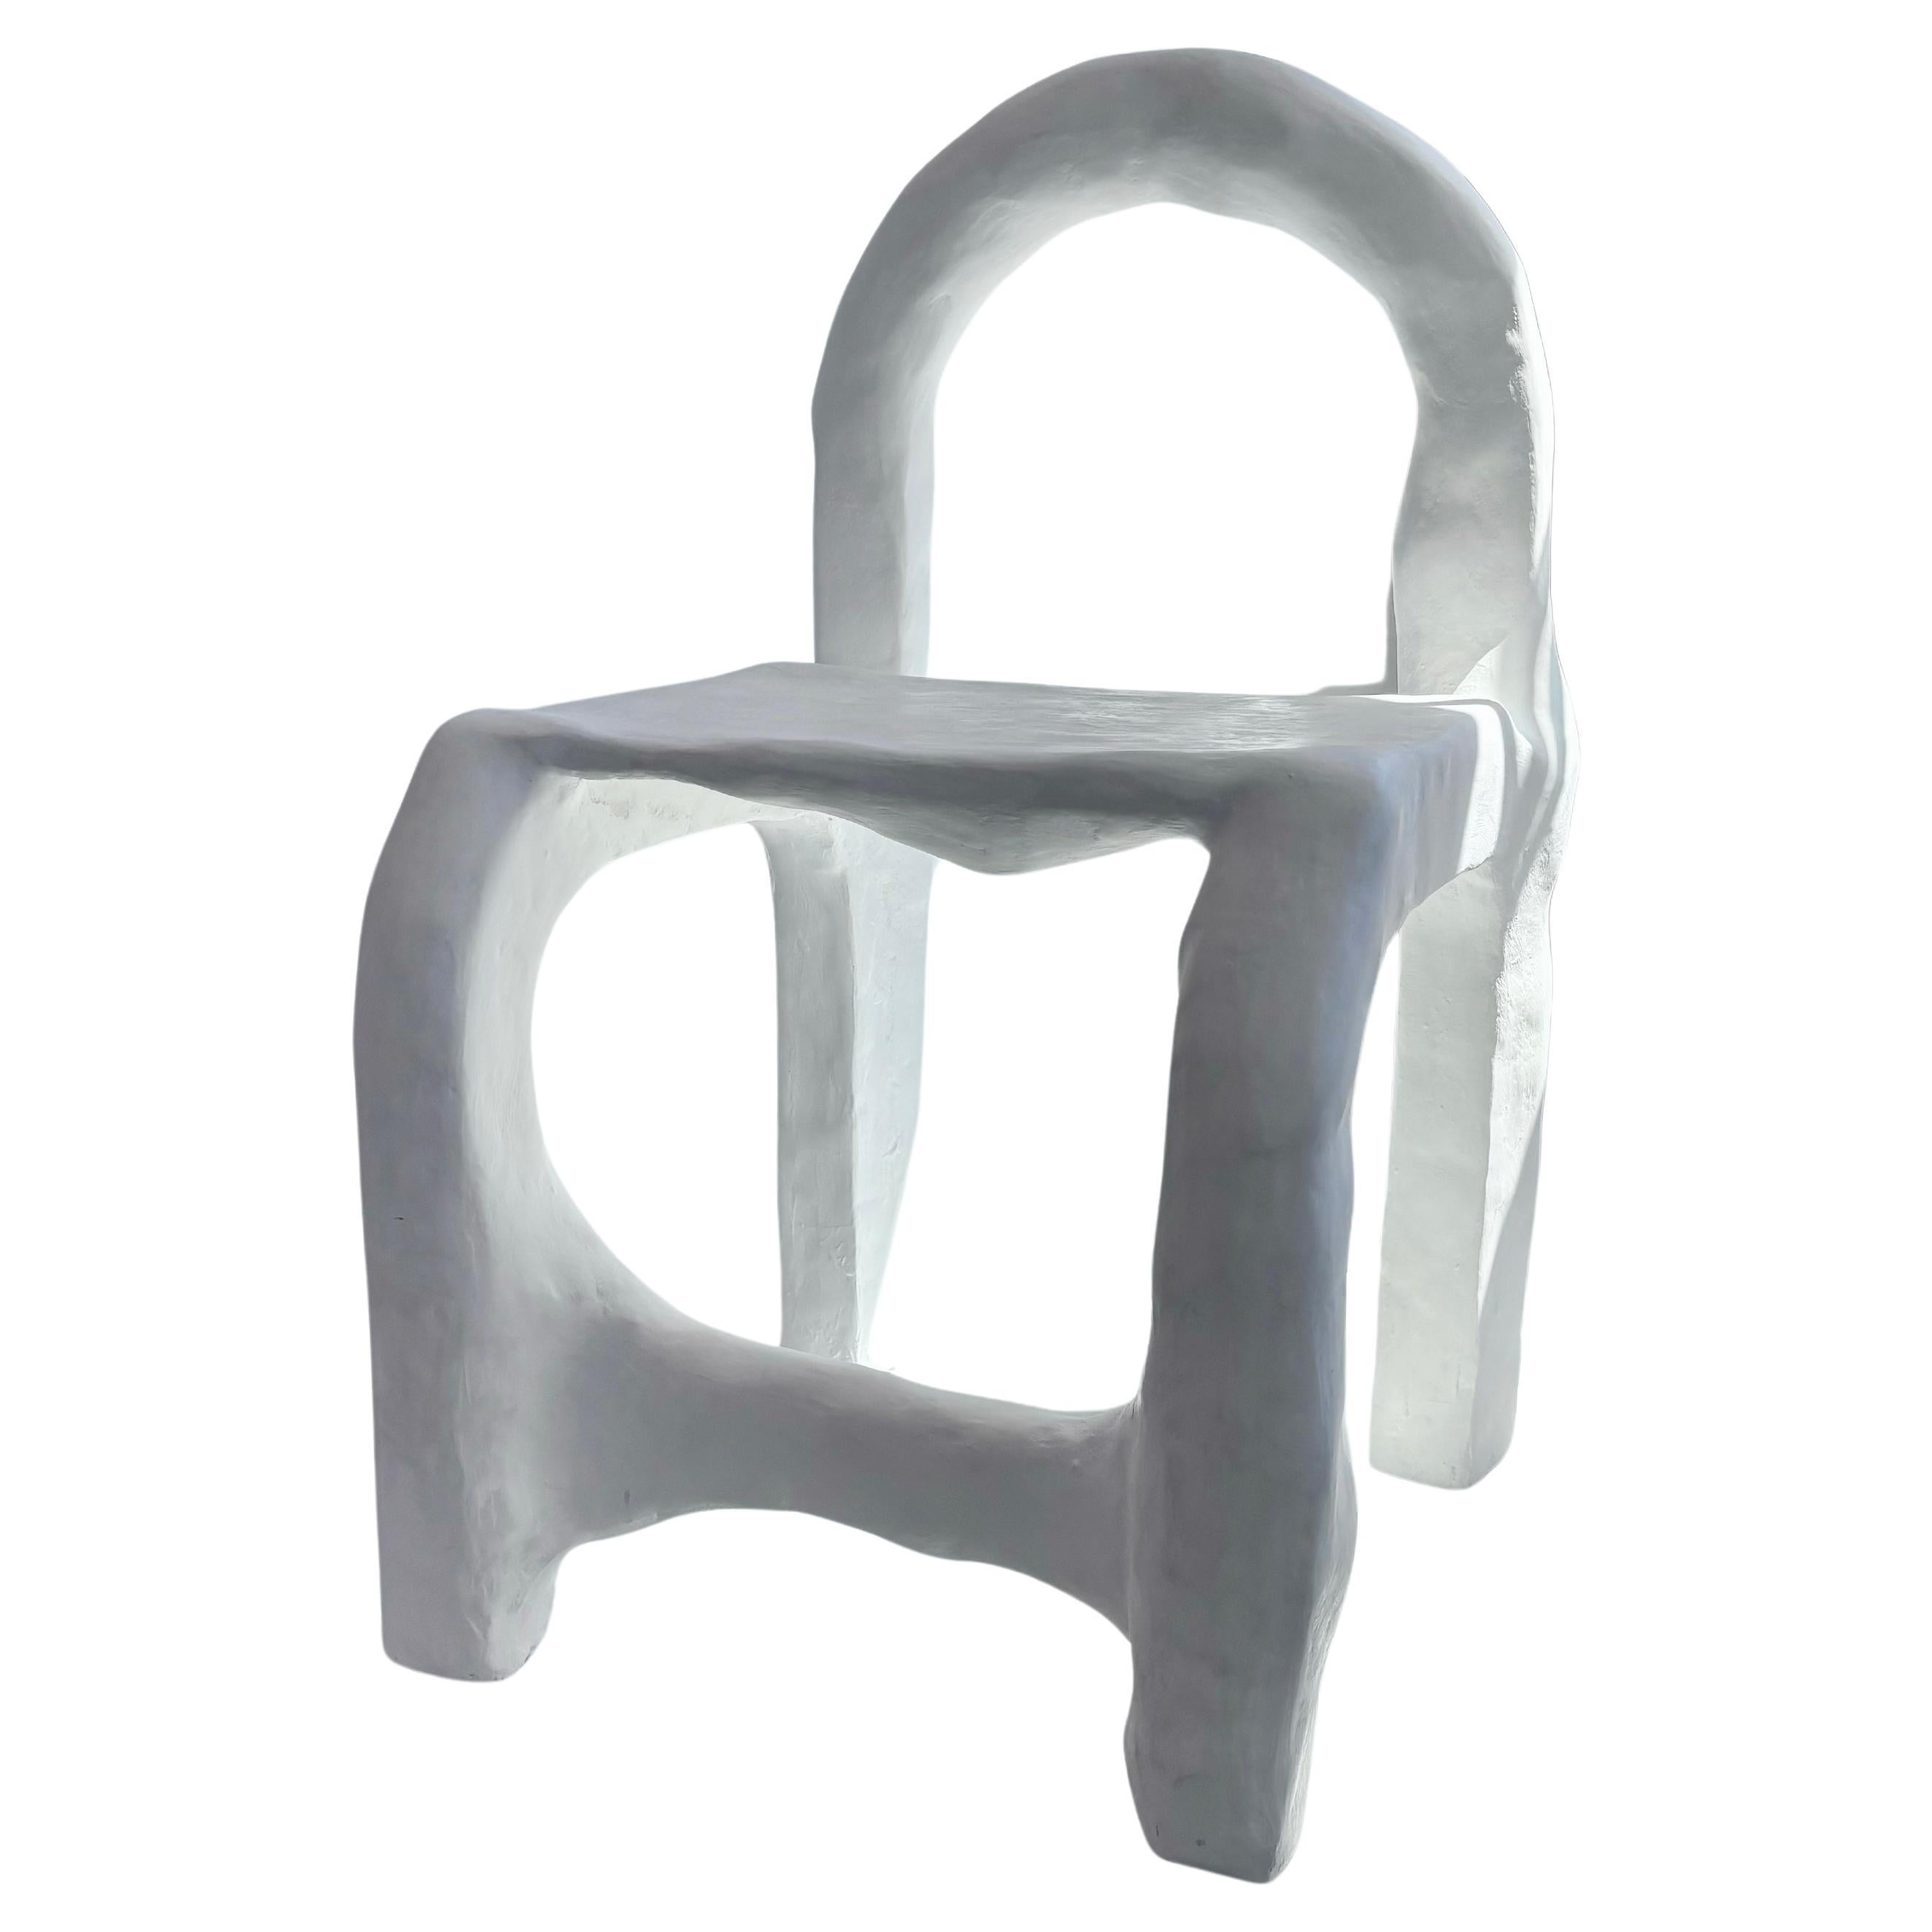 Entworfen von Studio Chora, 2024. 
Biomorphisch: 'bios' bedeutet Leben und 'morphe' bedeutet Form A. 

Der biomorphe Stuhl ist Teil einer organischen Serie von Funktionsskulpturen. Jeder Stuhl ist ein Unikat und wird von Hand gefertigt.